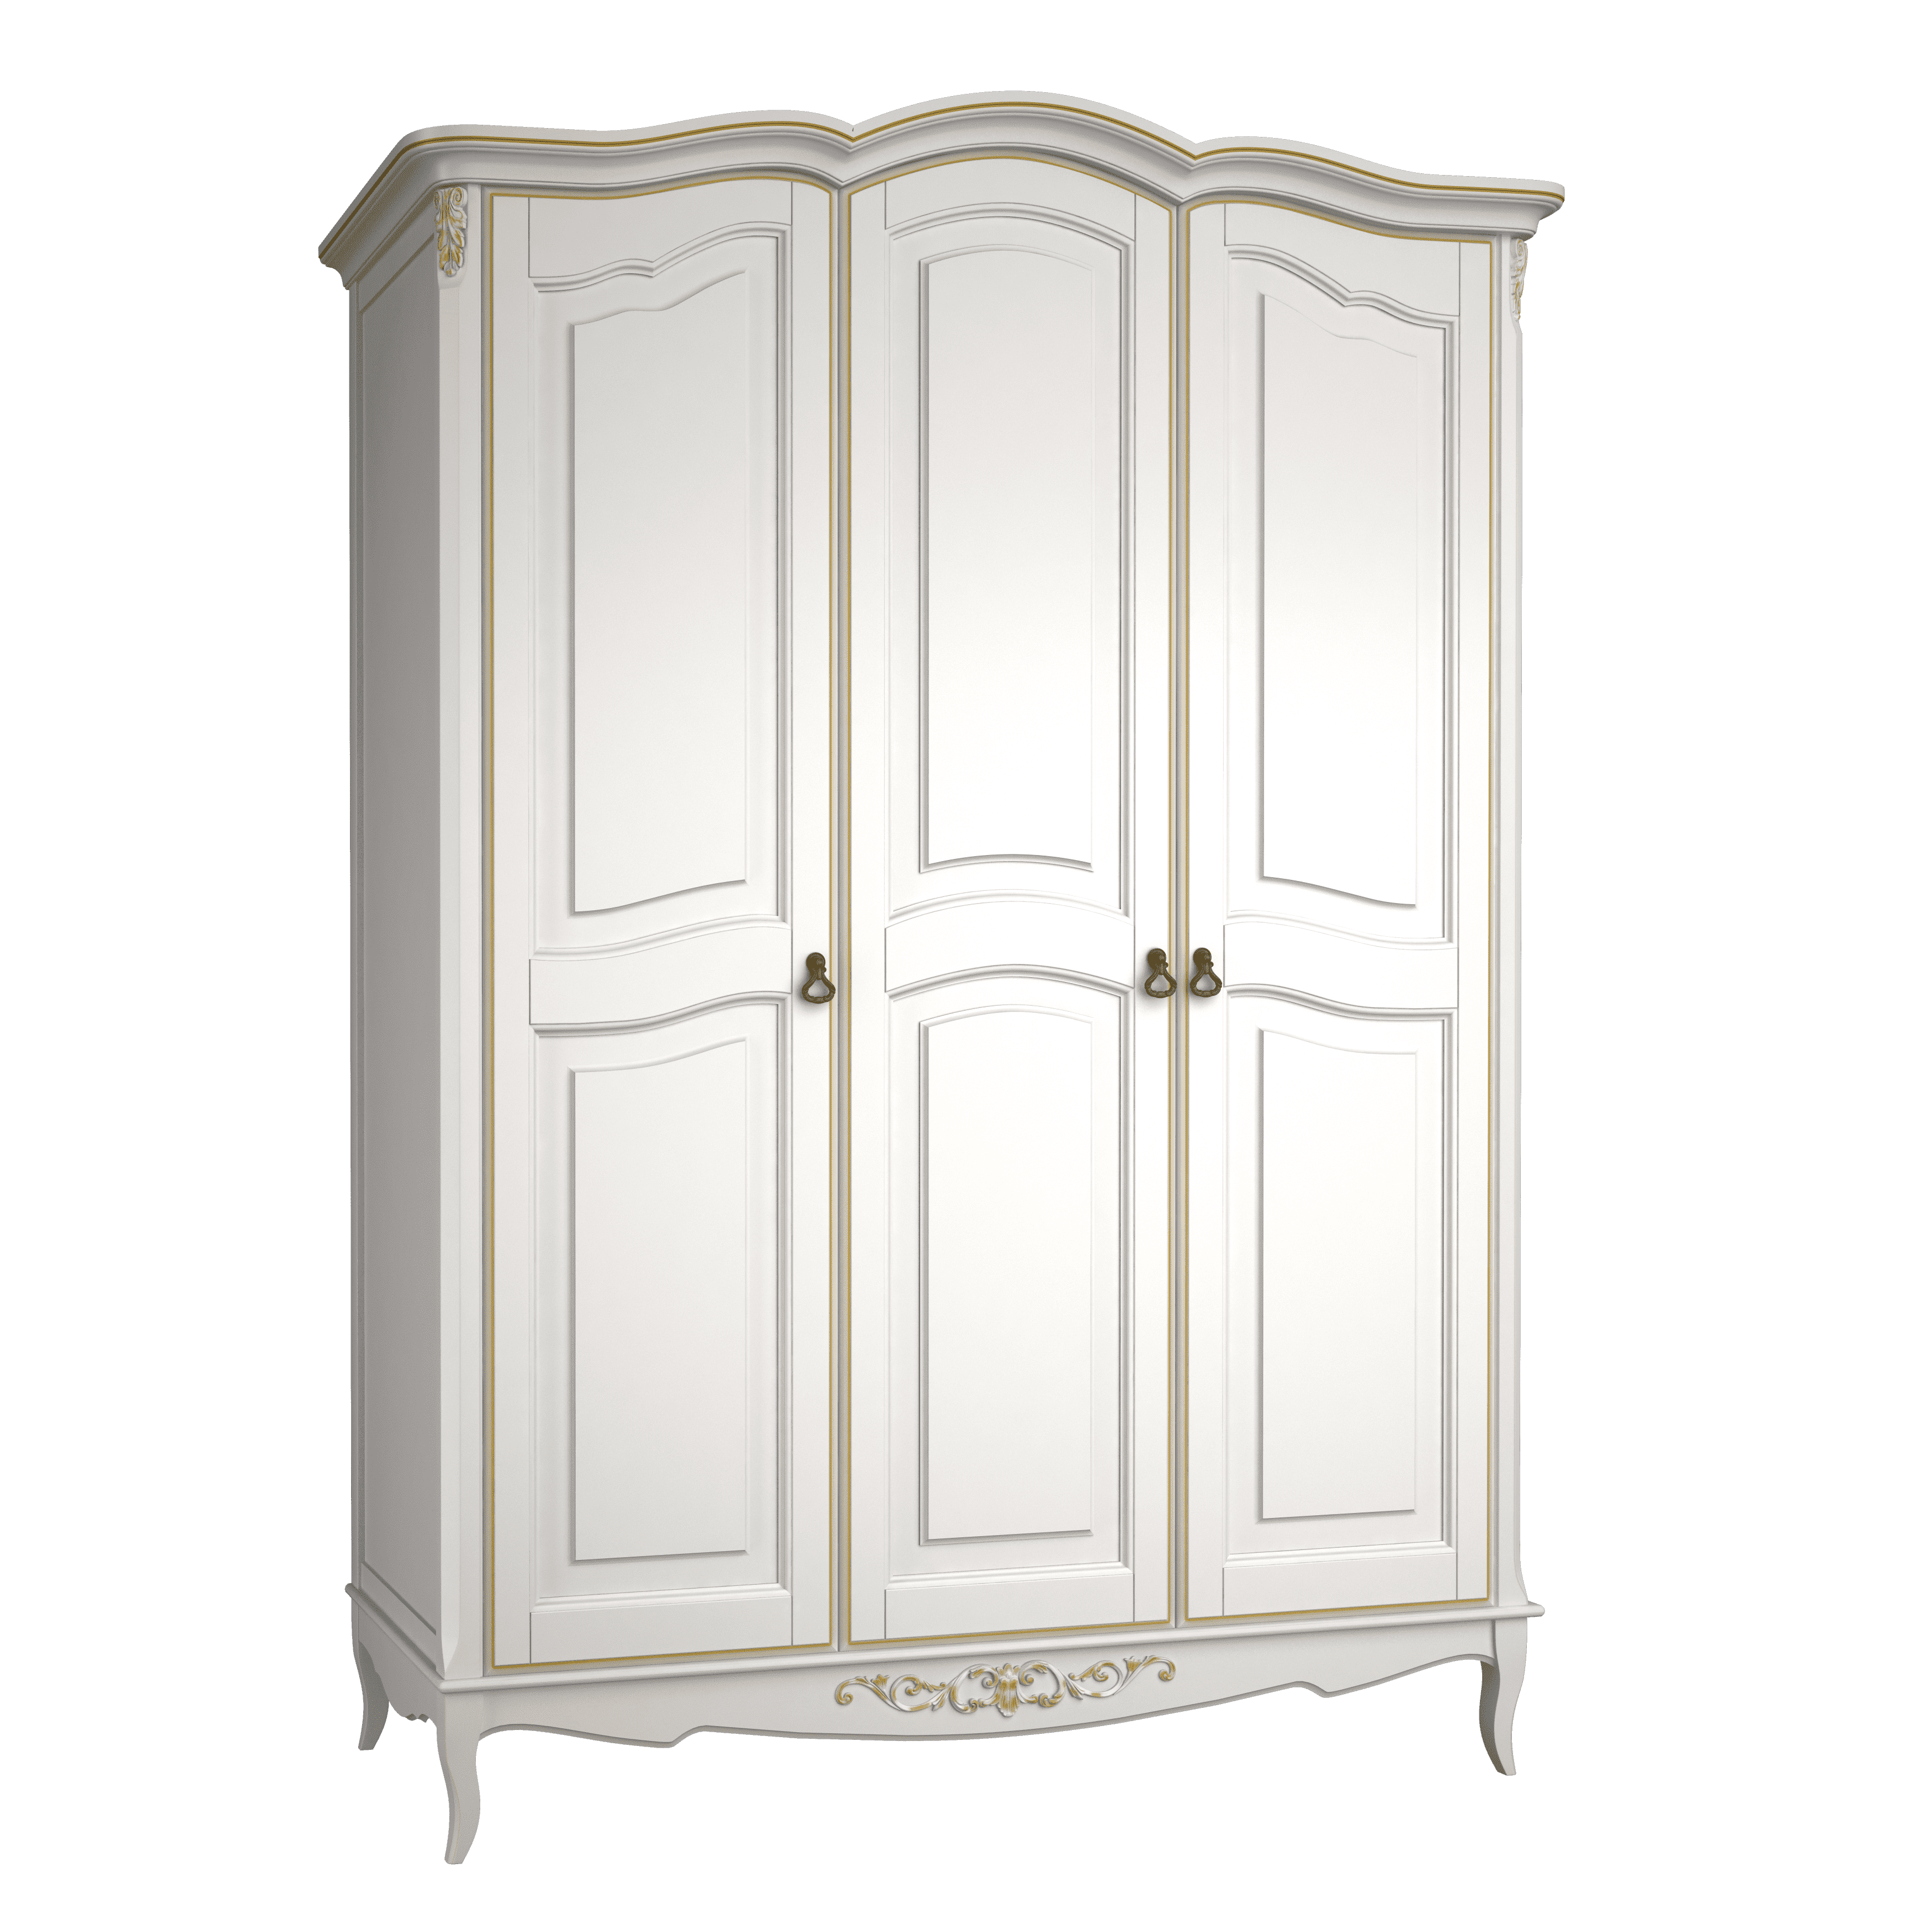 Шкаф платяной Aletan Provence, 3-х дверный, цвет: слоновая кость-золото (B803G)B803G